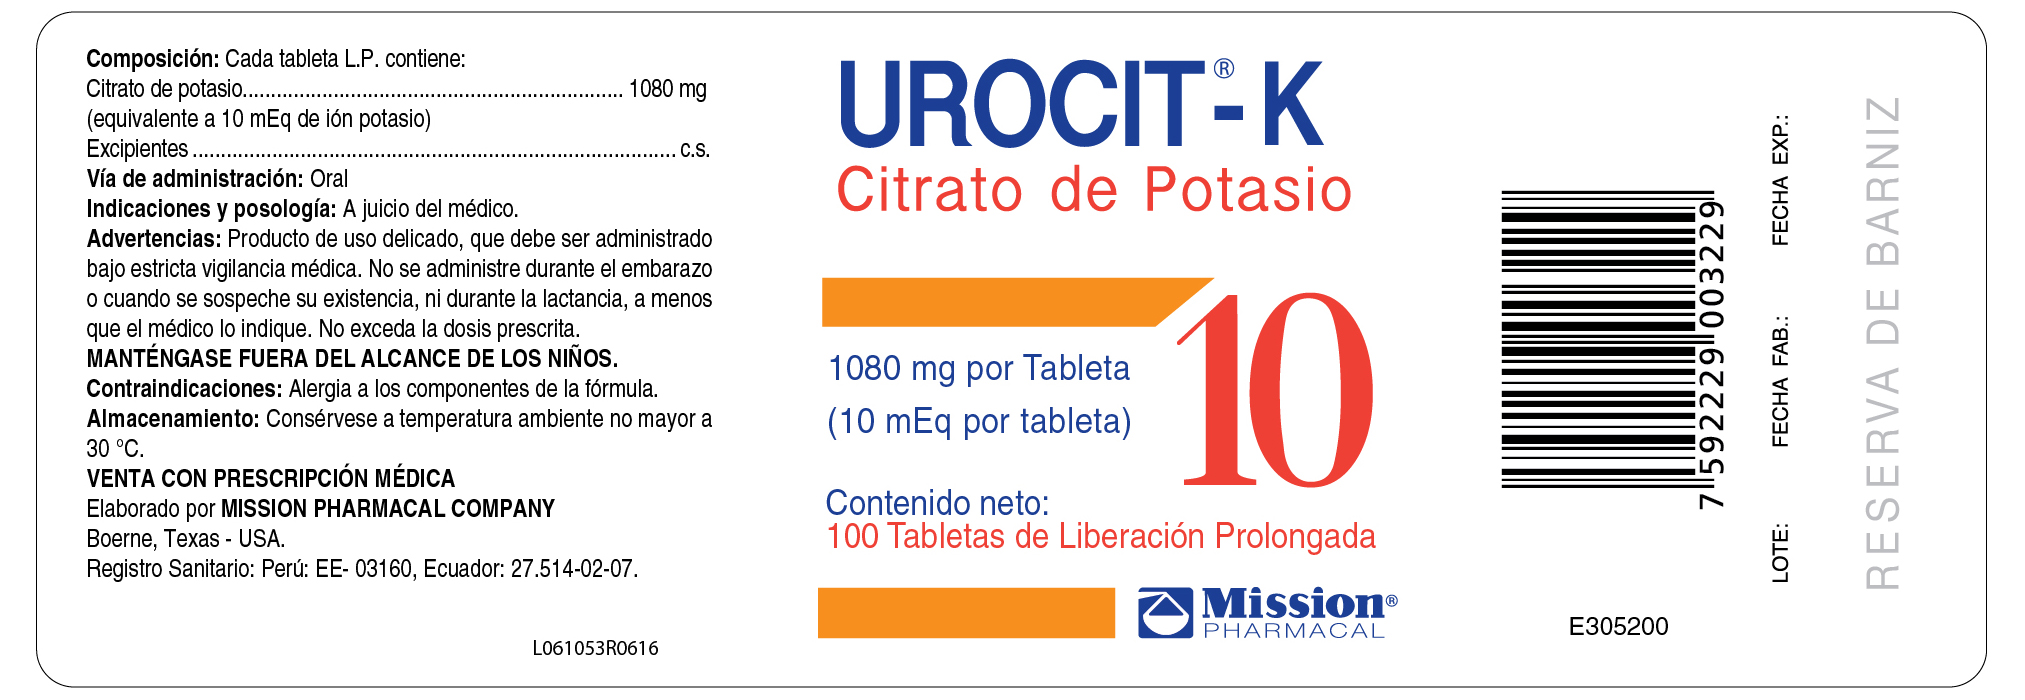 Urocit-K 10 mEq Peru